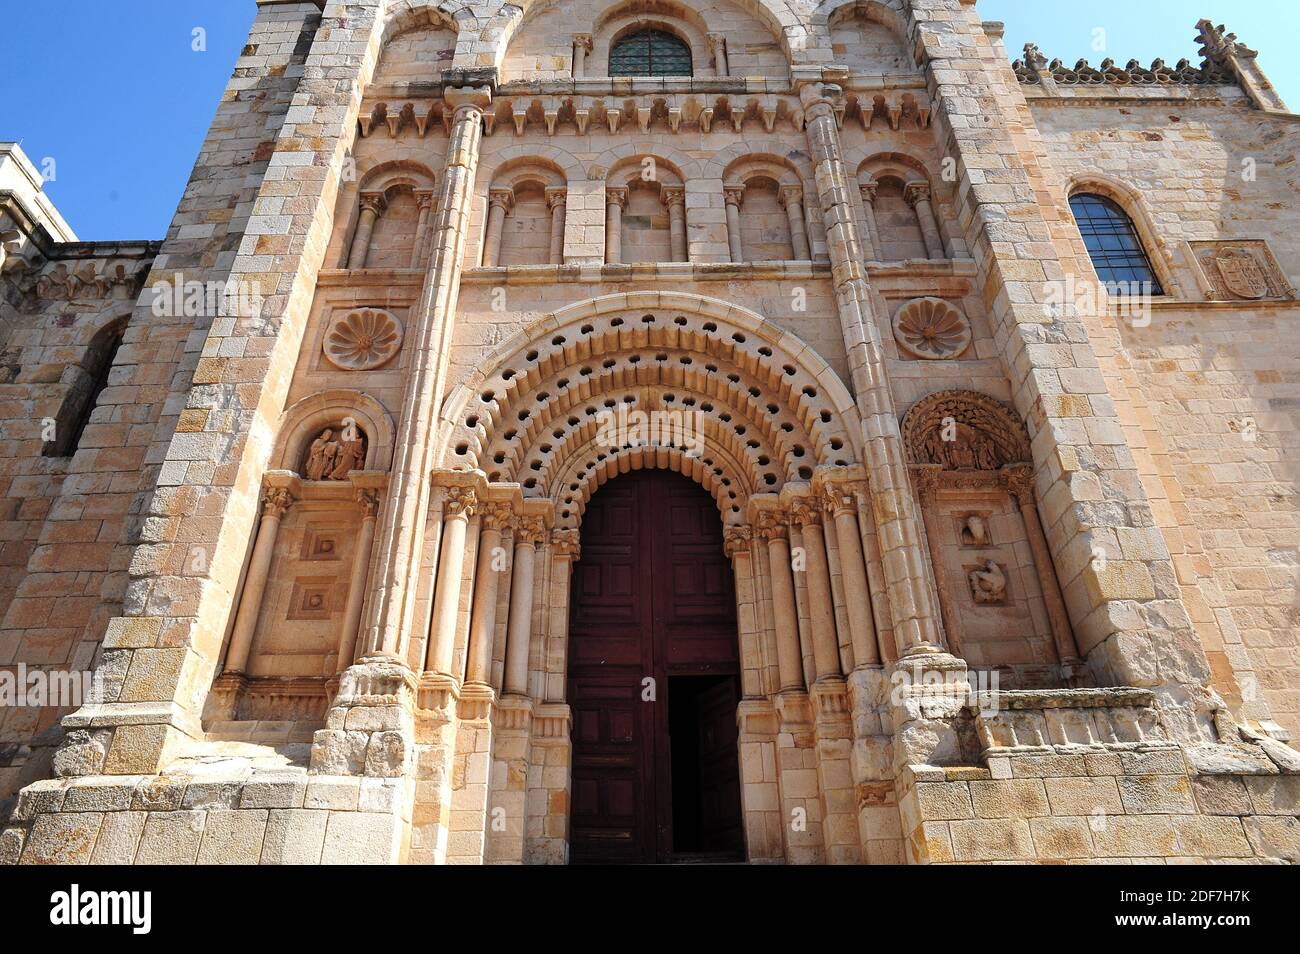 Zamora ciudad, catedral (siglo XII románico). Obispo Portico. Castilla y León, España. Foto de stock